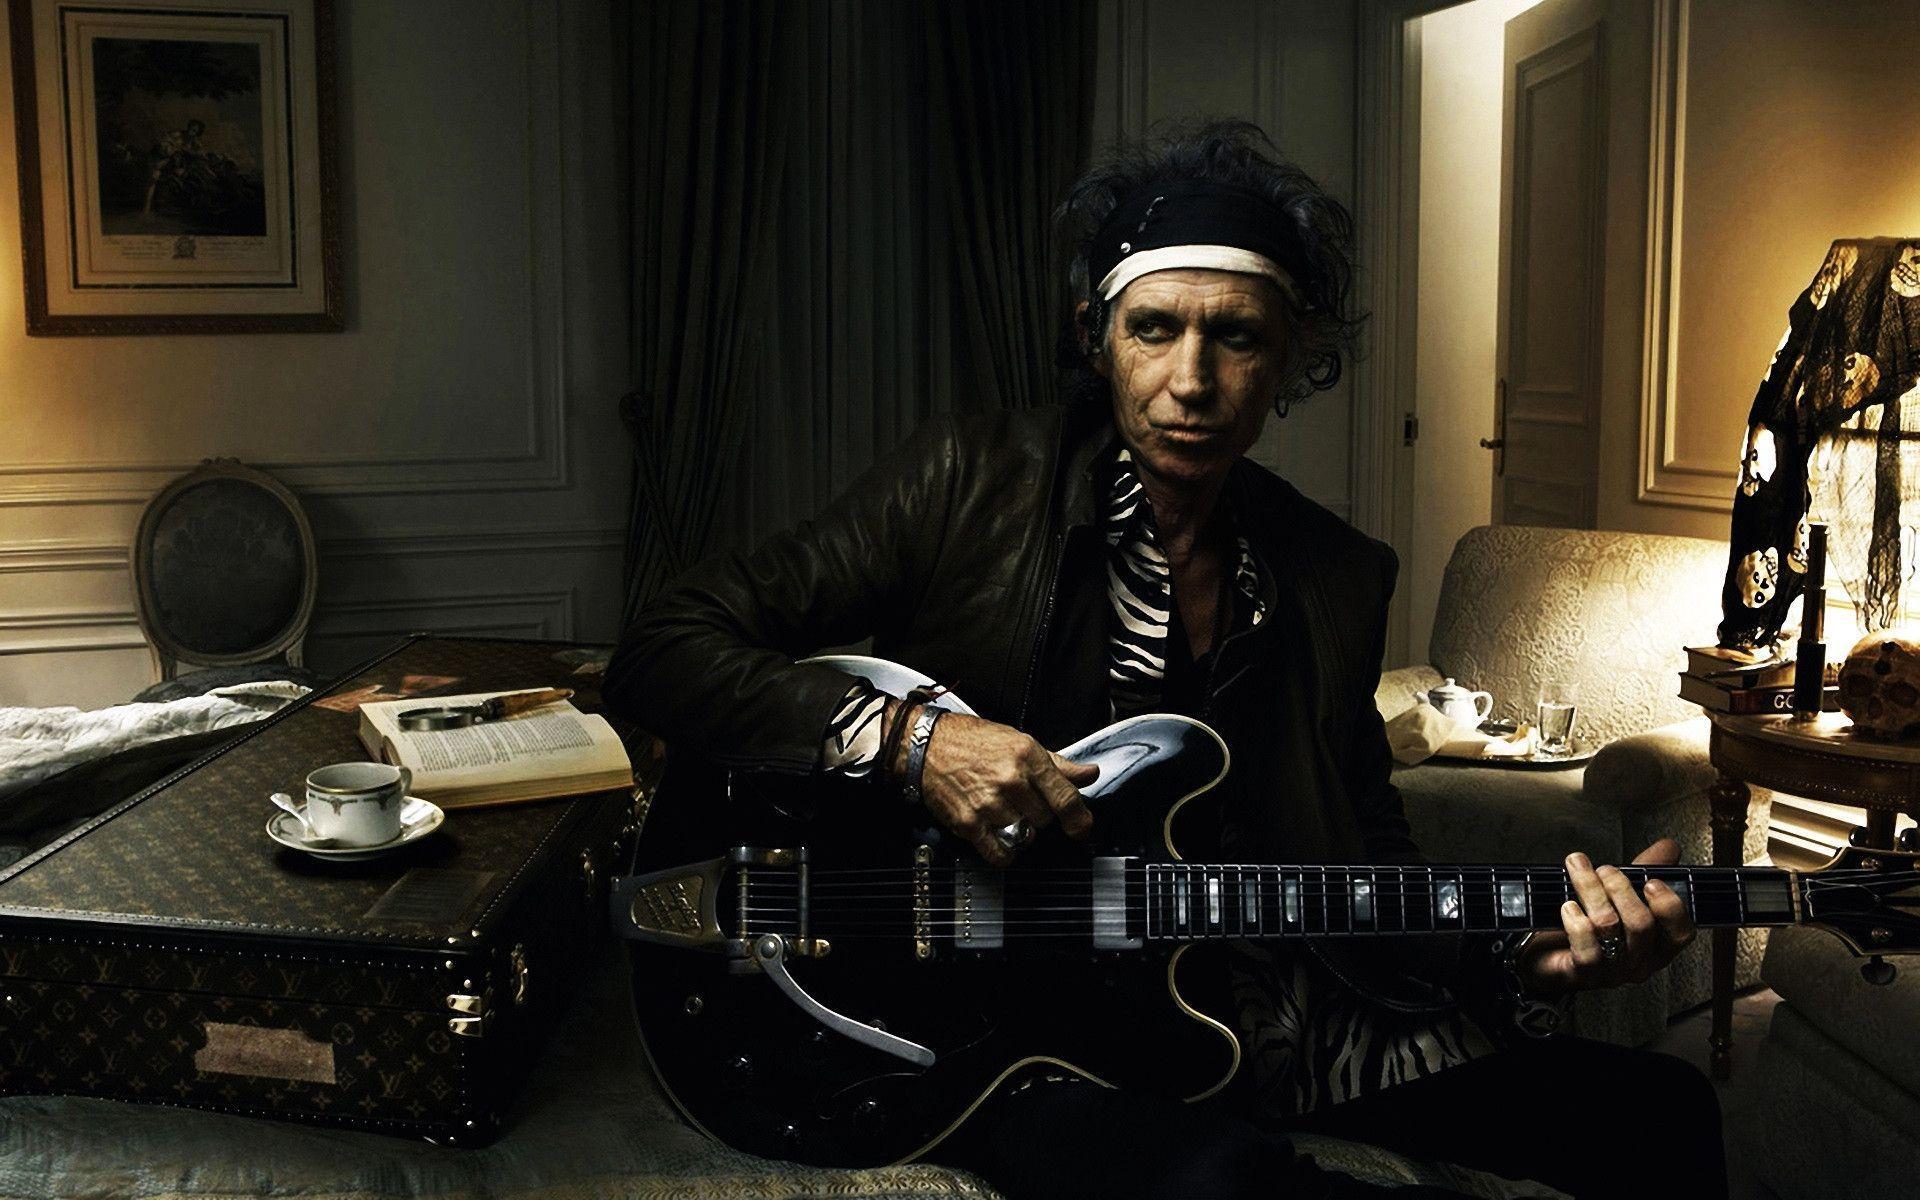 Keith Richards Guitarist Rolling Stones widescreen wallpaper. Wide